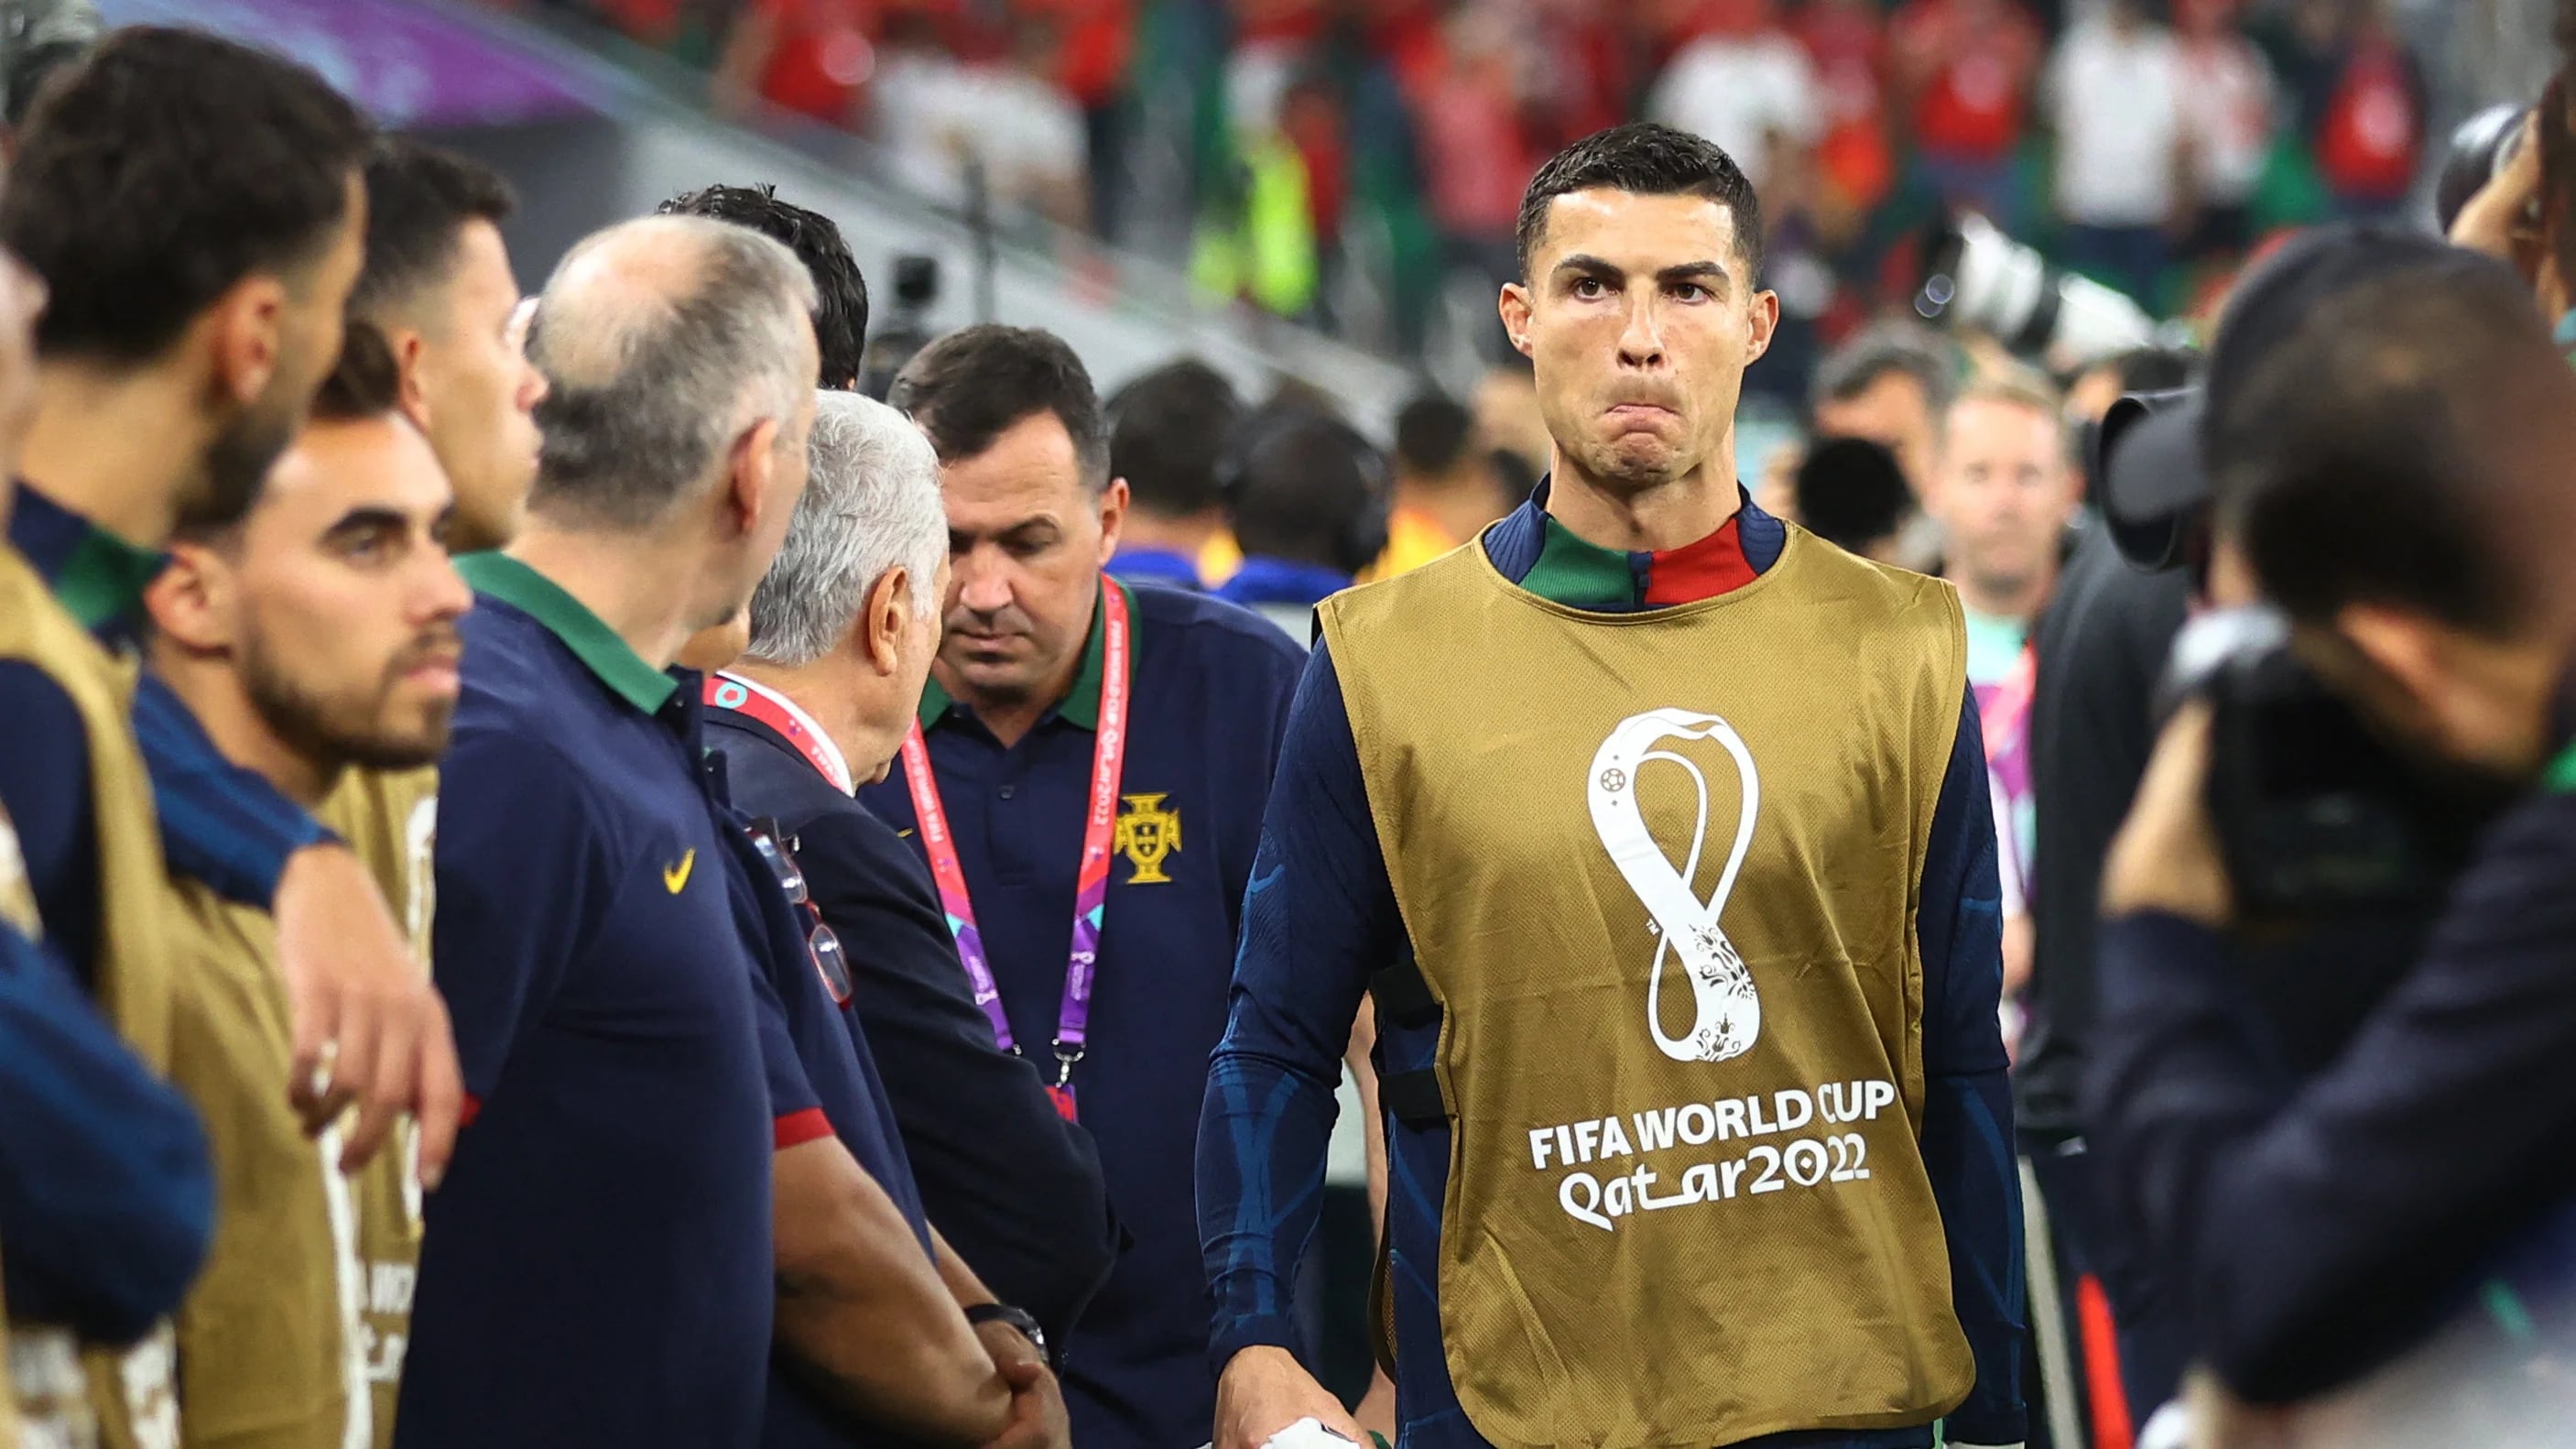 El técnico de Portugal desconoció la historia, es increíble que haya puesto a Cristiano Ronaldo en el banco